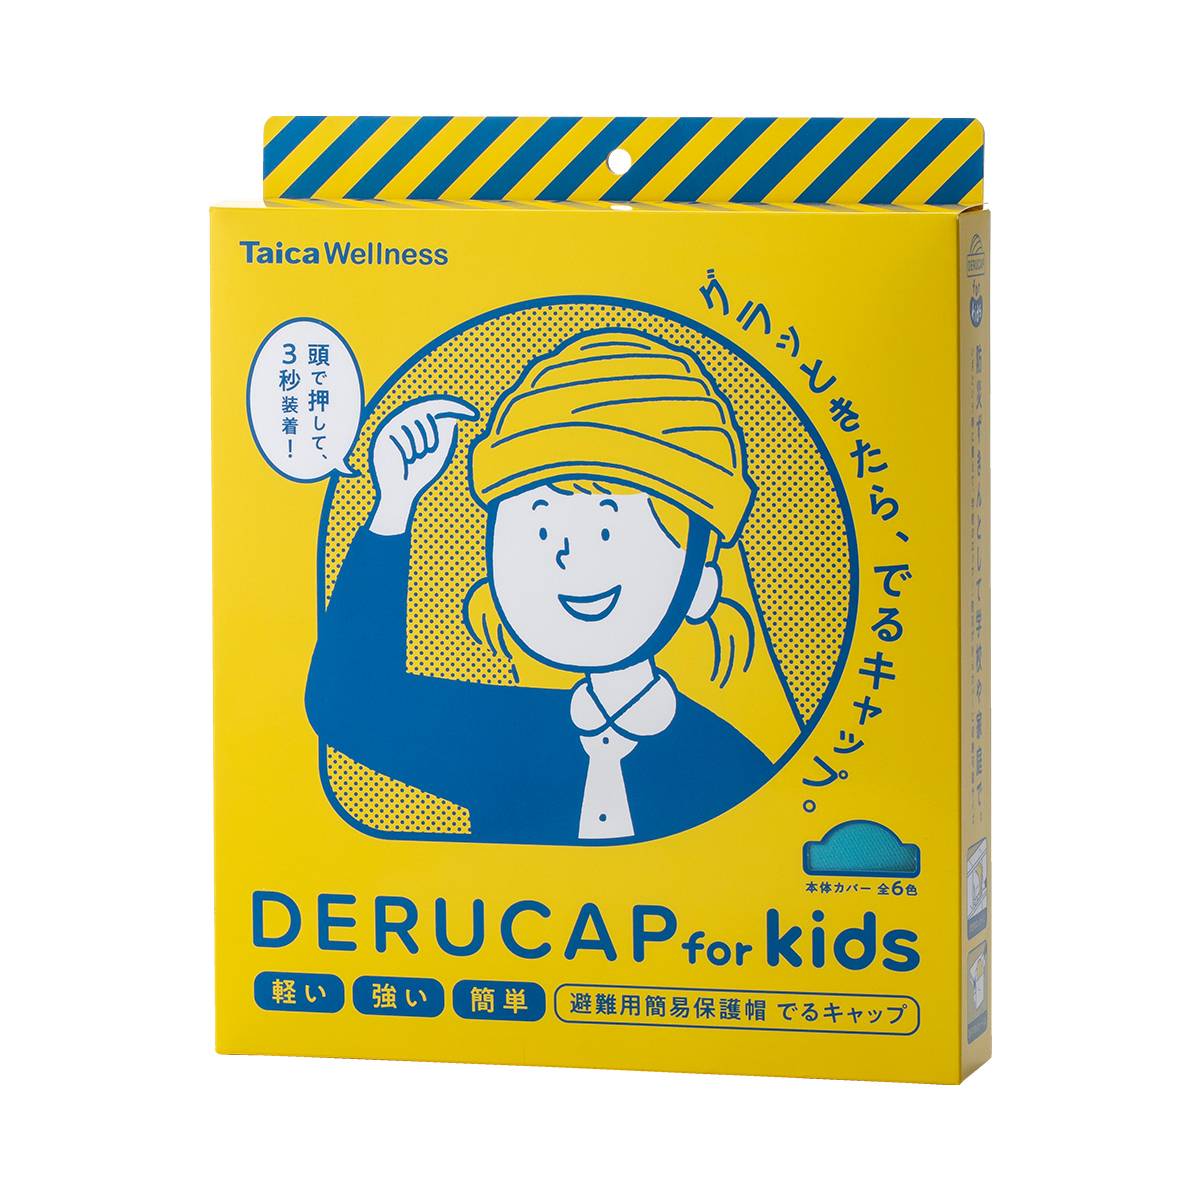 でるキャップ for kids 【ブルー】 タイカ 避難用簡易保護帽